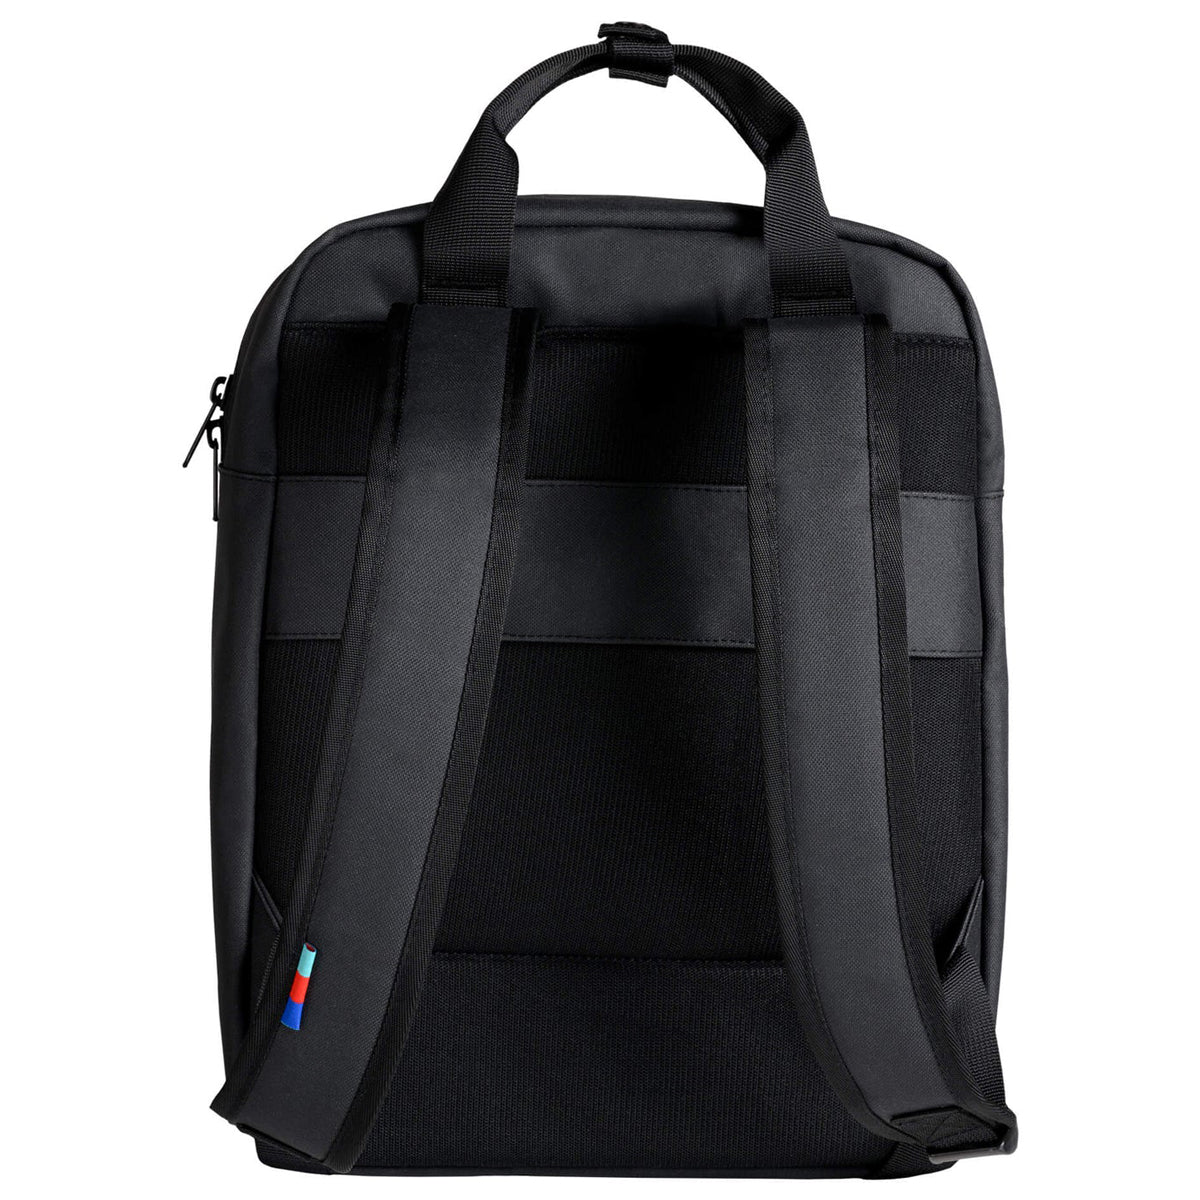 Got Bag Daypack Backpack - Black image 2